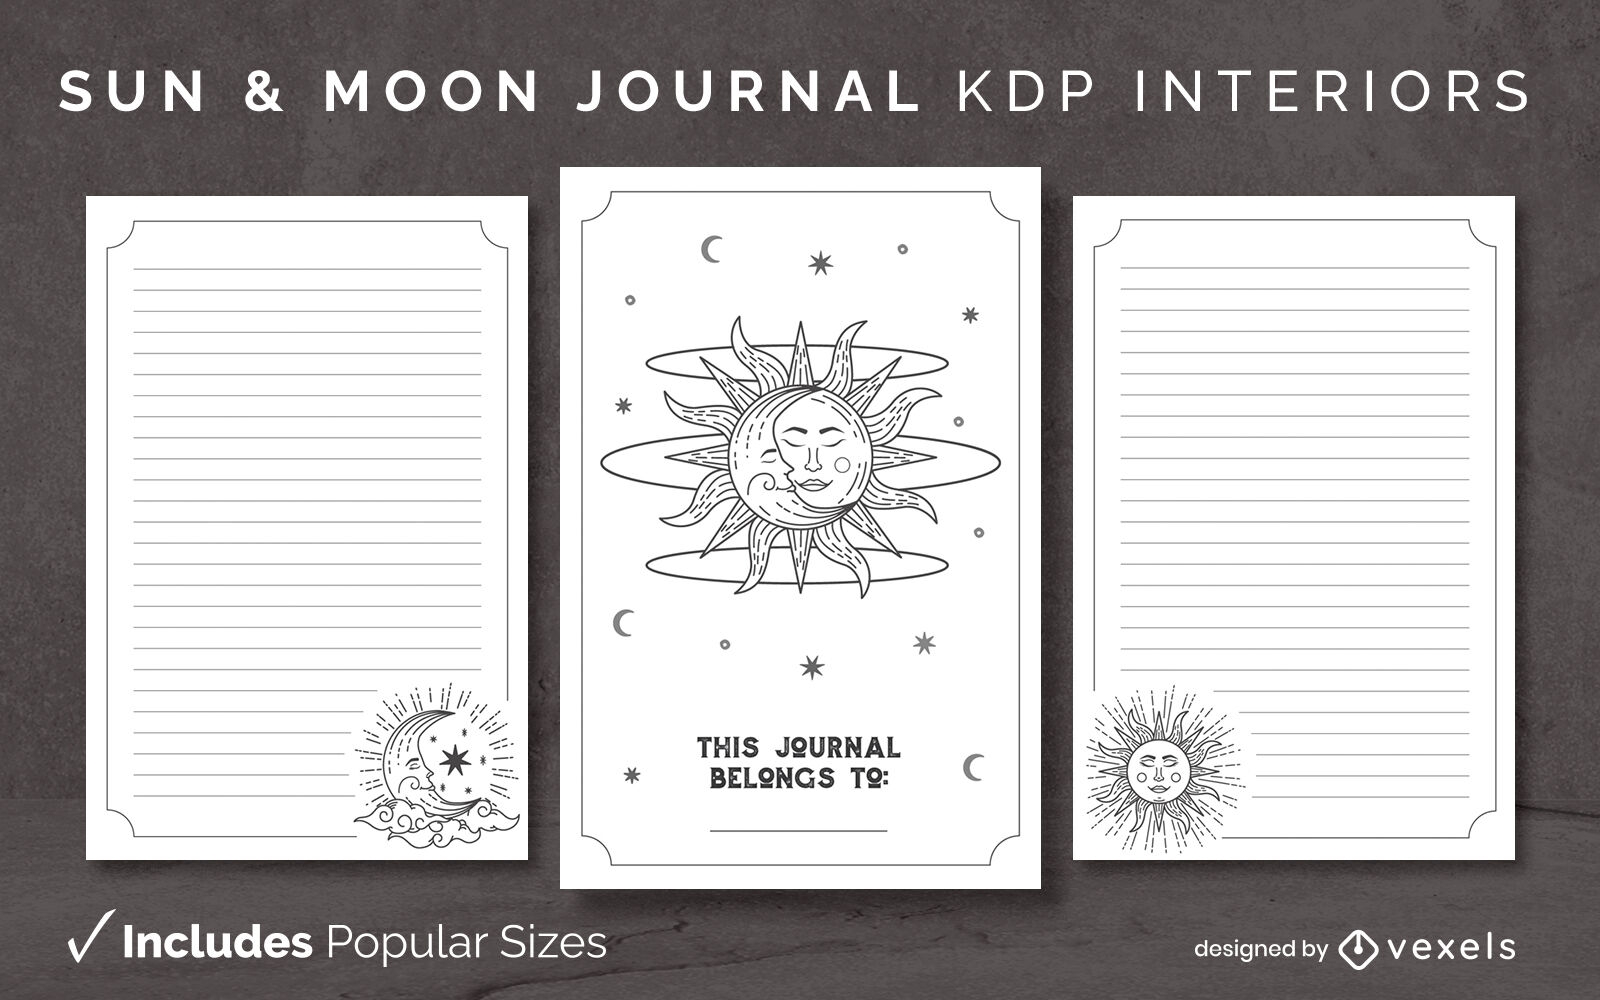 Entwurfsvorlage für Sonnen- und Mondzeitschriften KDP